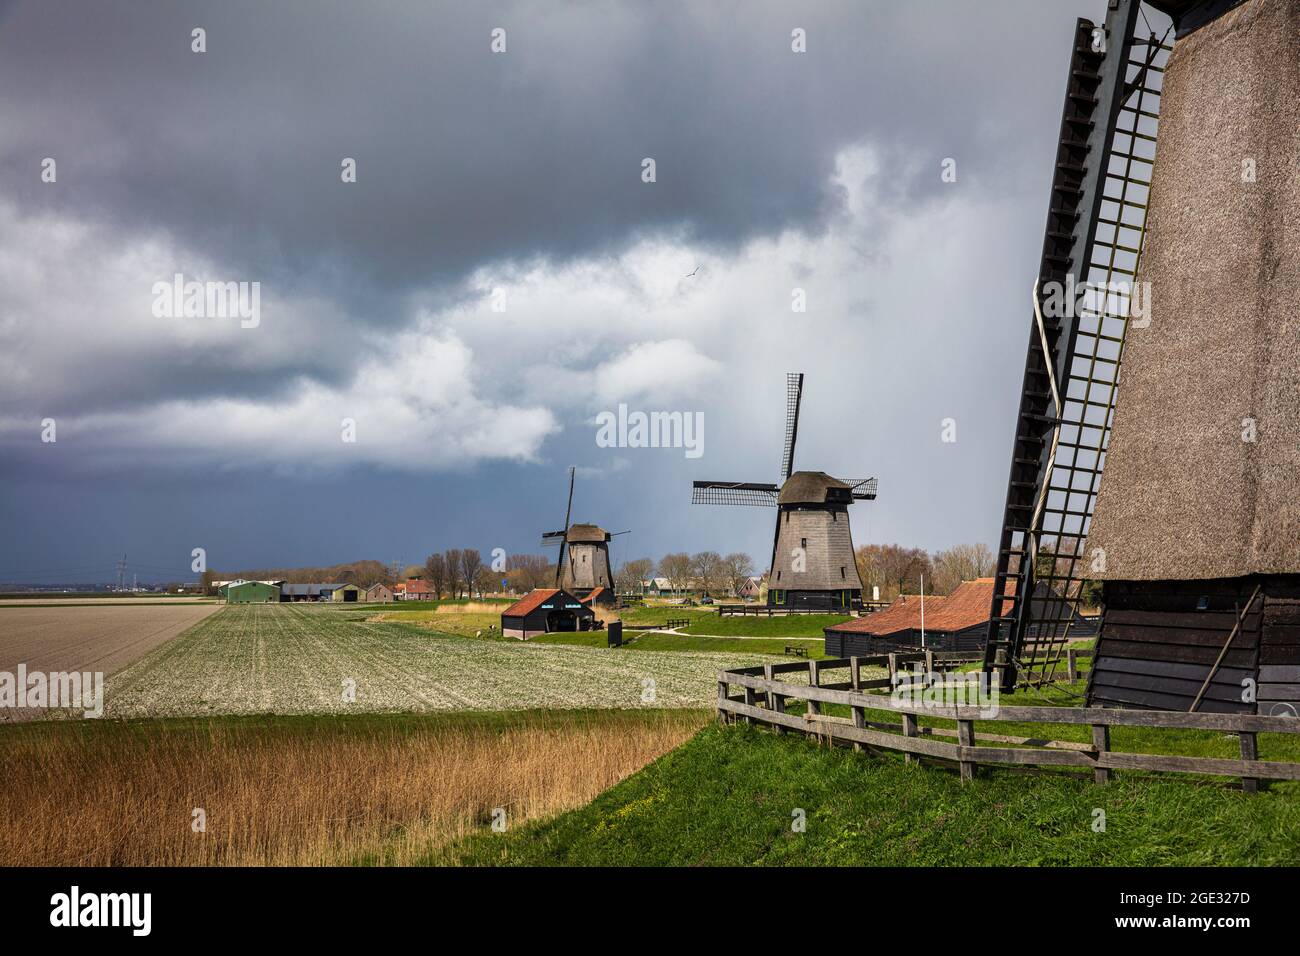 The Netherlands, Schermerhorn, windmills. Stock Photo